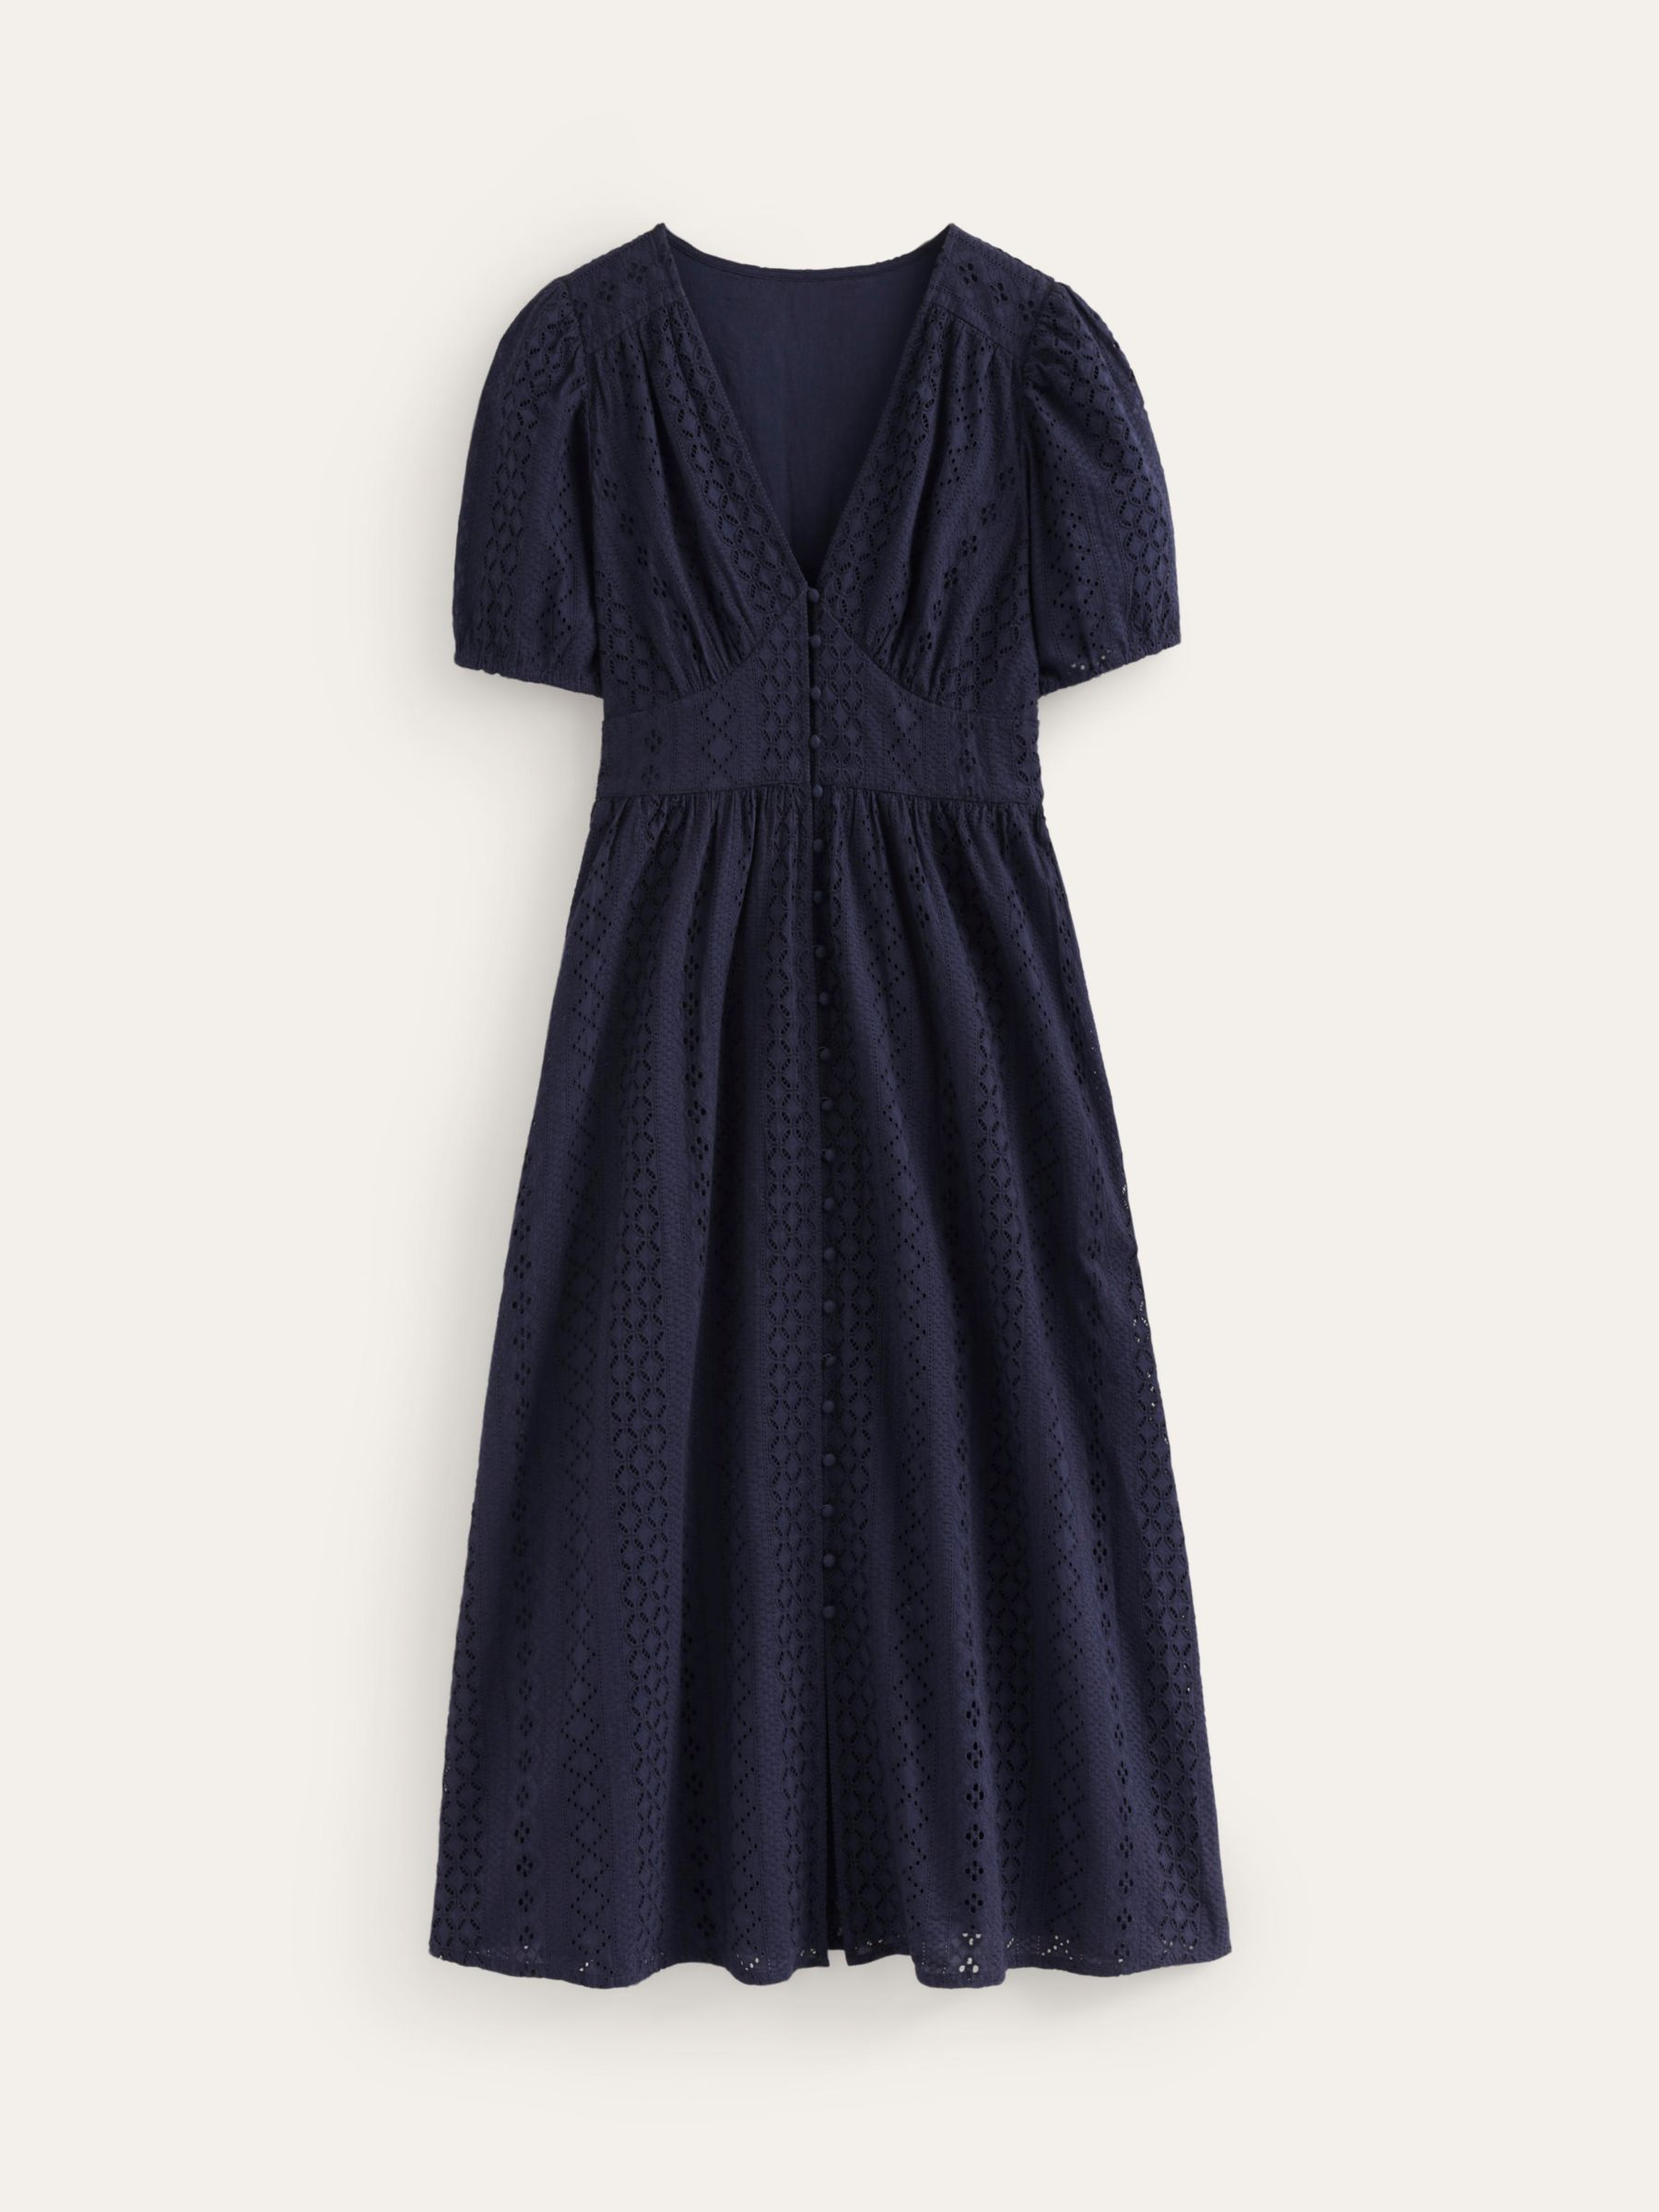 Boden Broderie Midi Tie Cotton Dress, Navy, 8